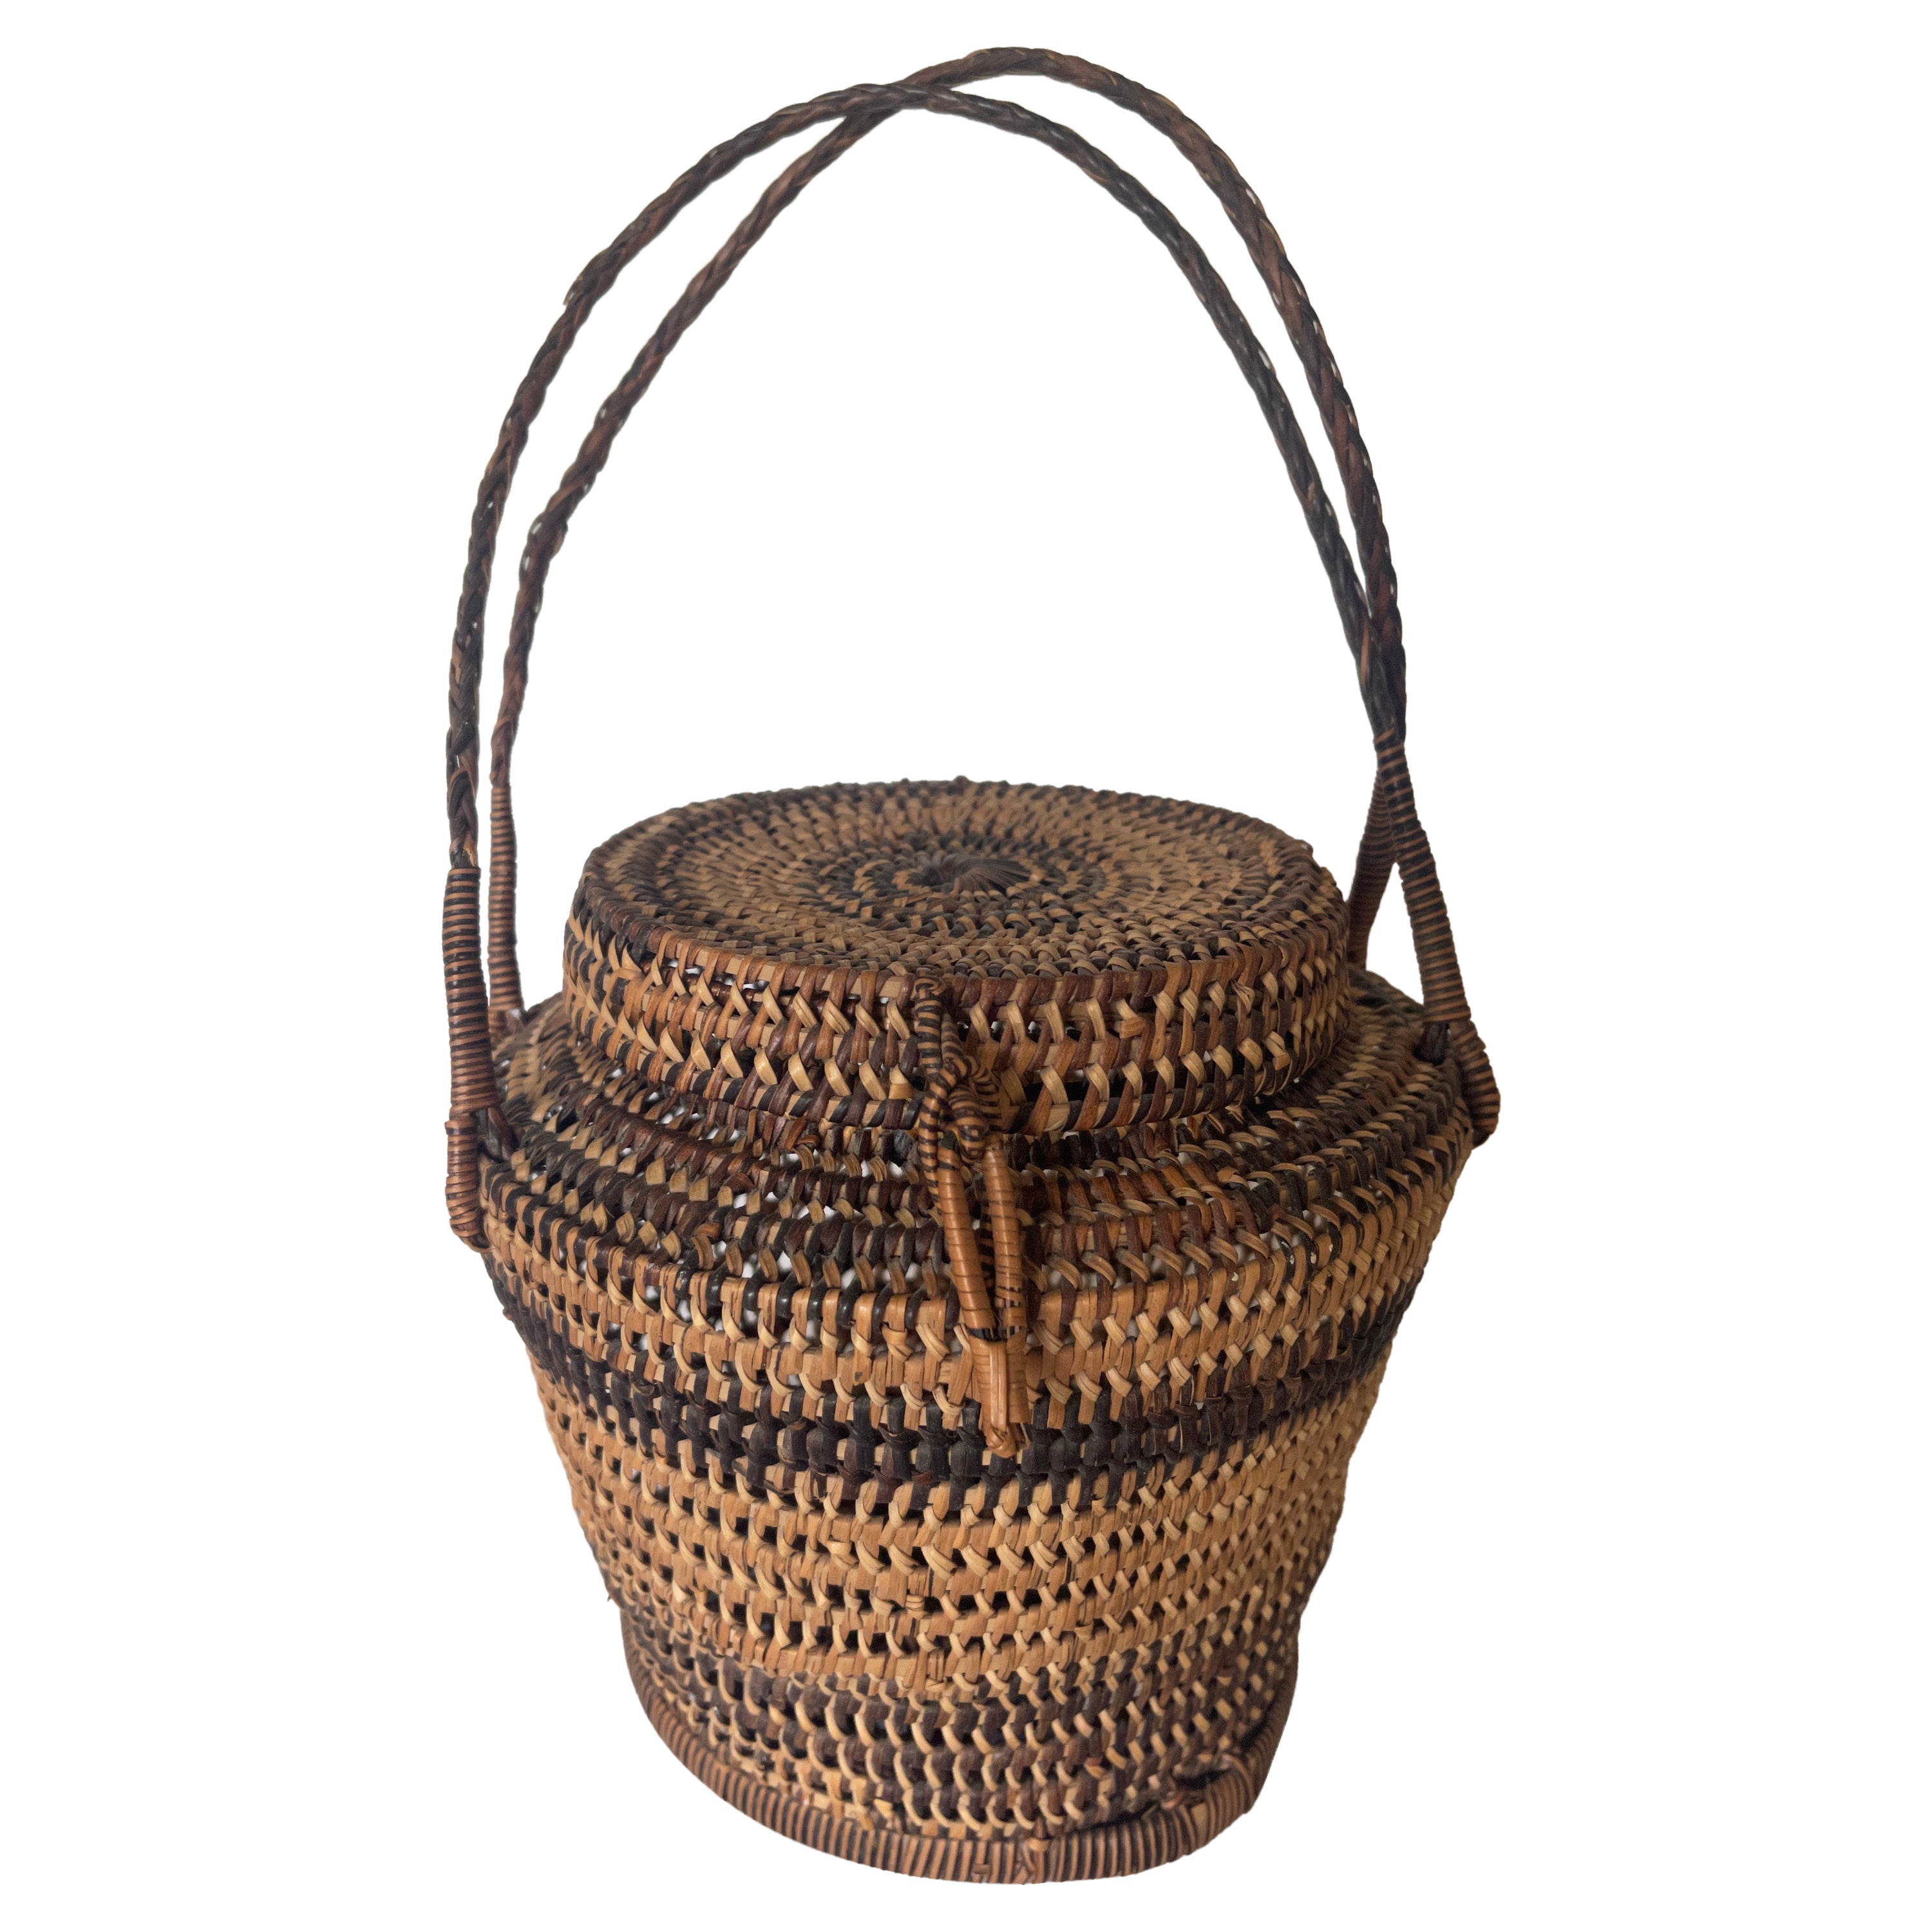 Vintage Wicker Handbag Basket Footed Purse with Wood Handles Italy EUC  (KP-3) | eBay